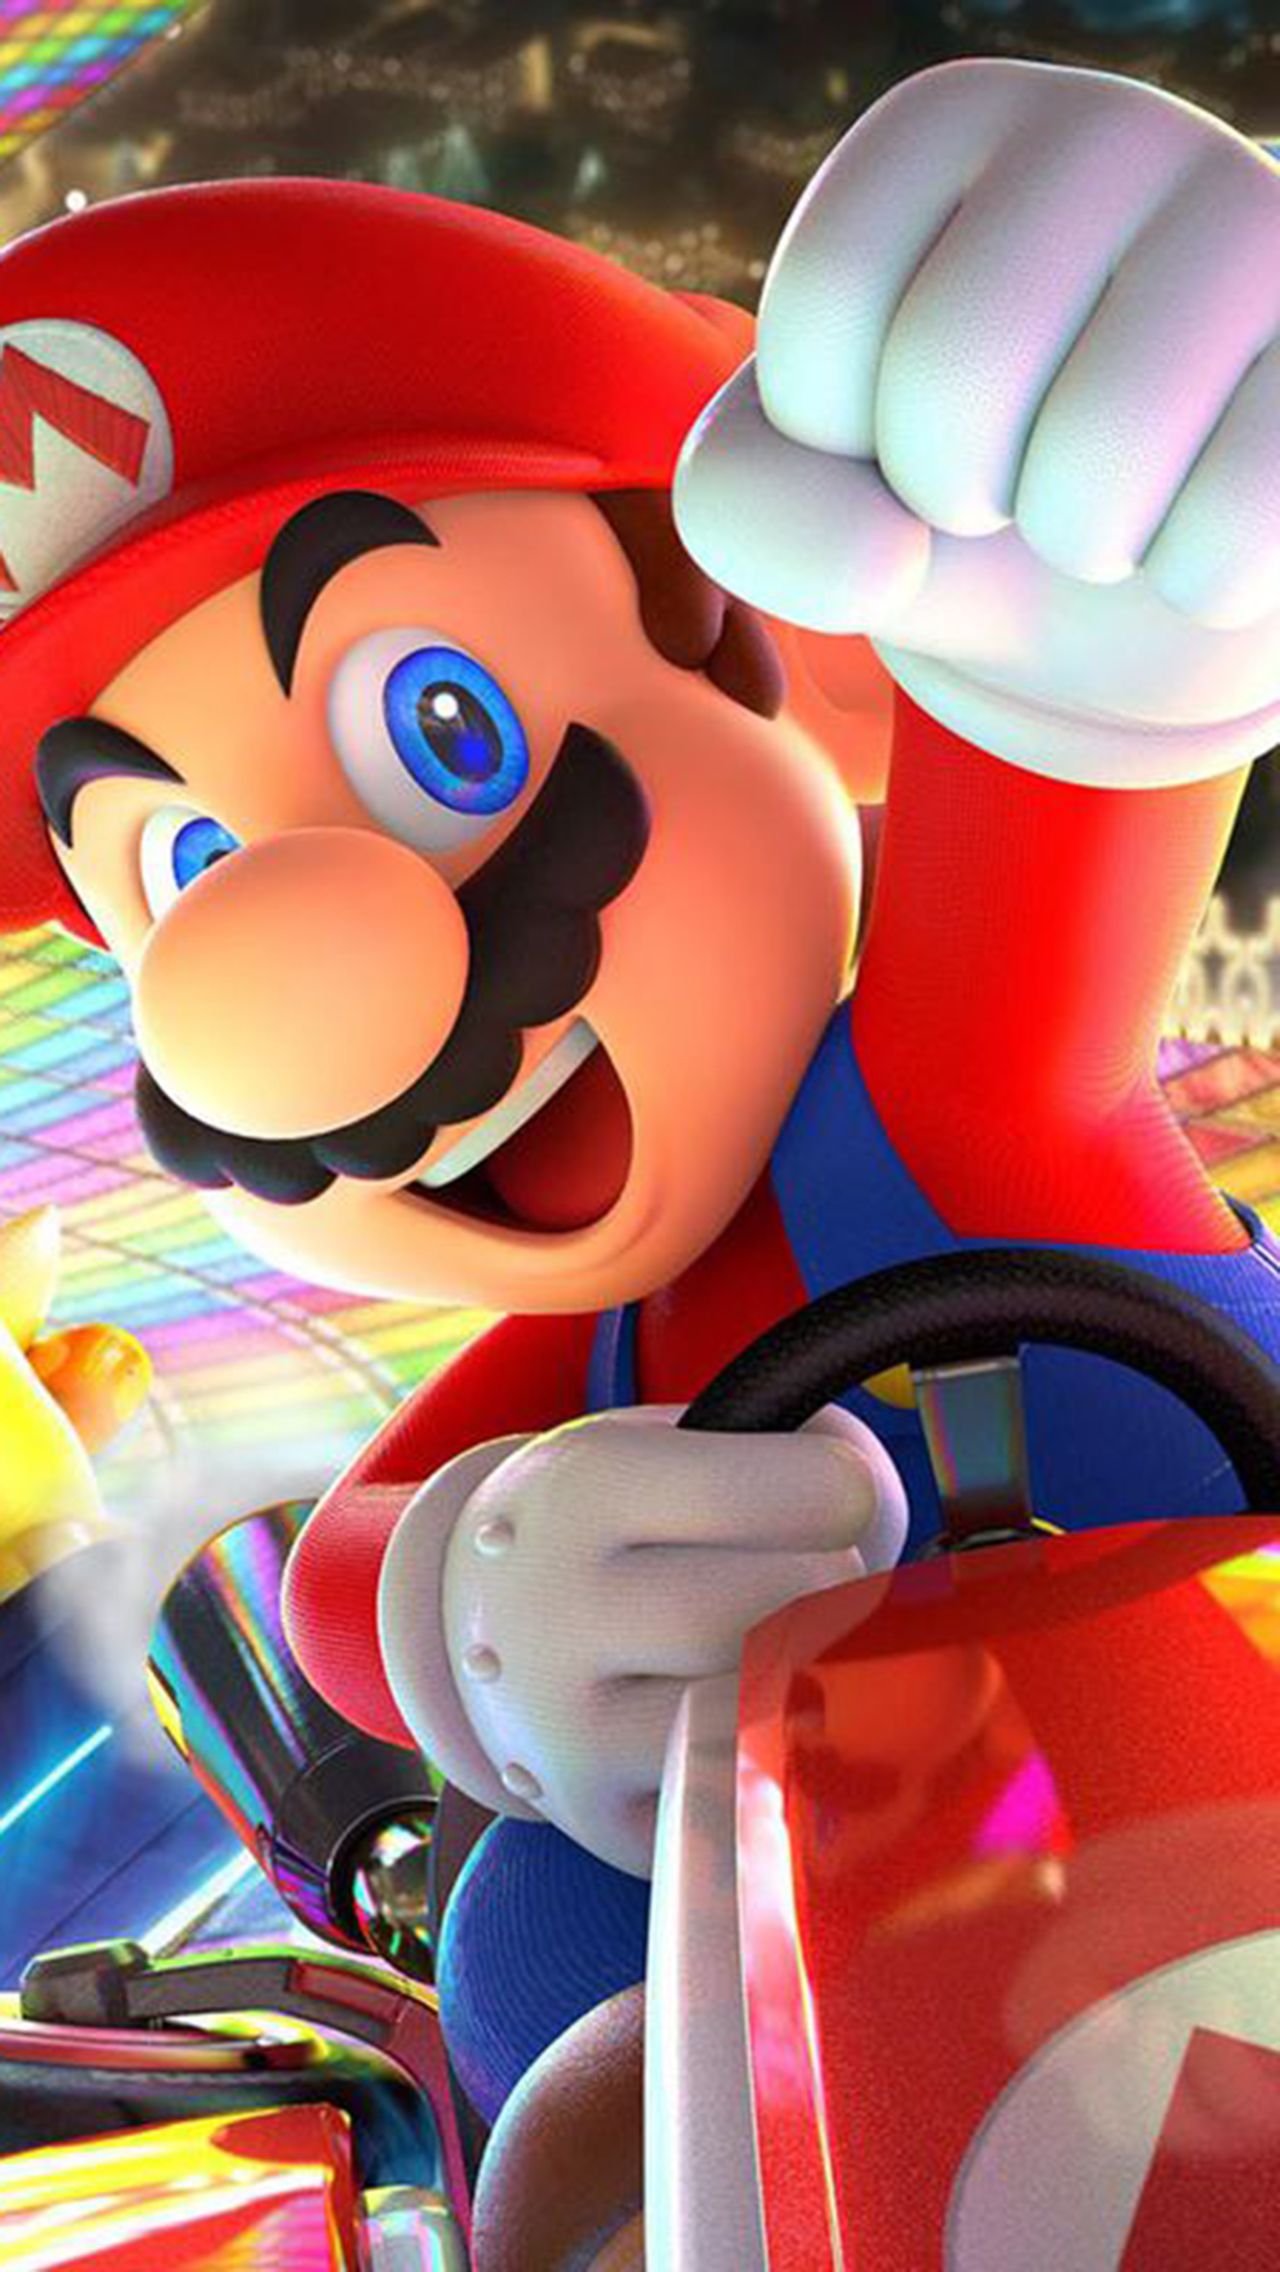 Mario Kart 8/Deluxe: 45,53 млн копий